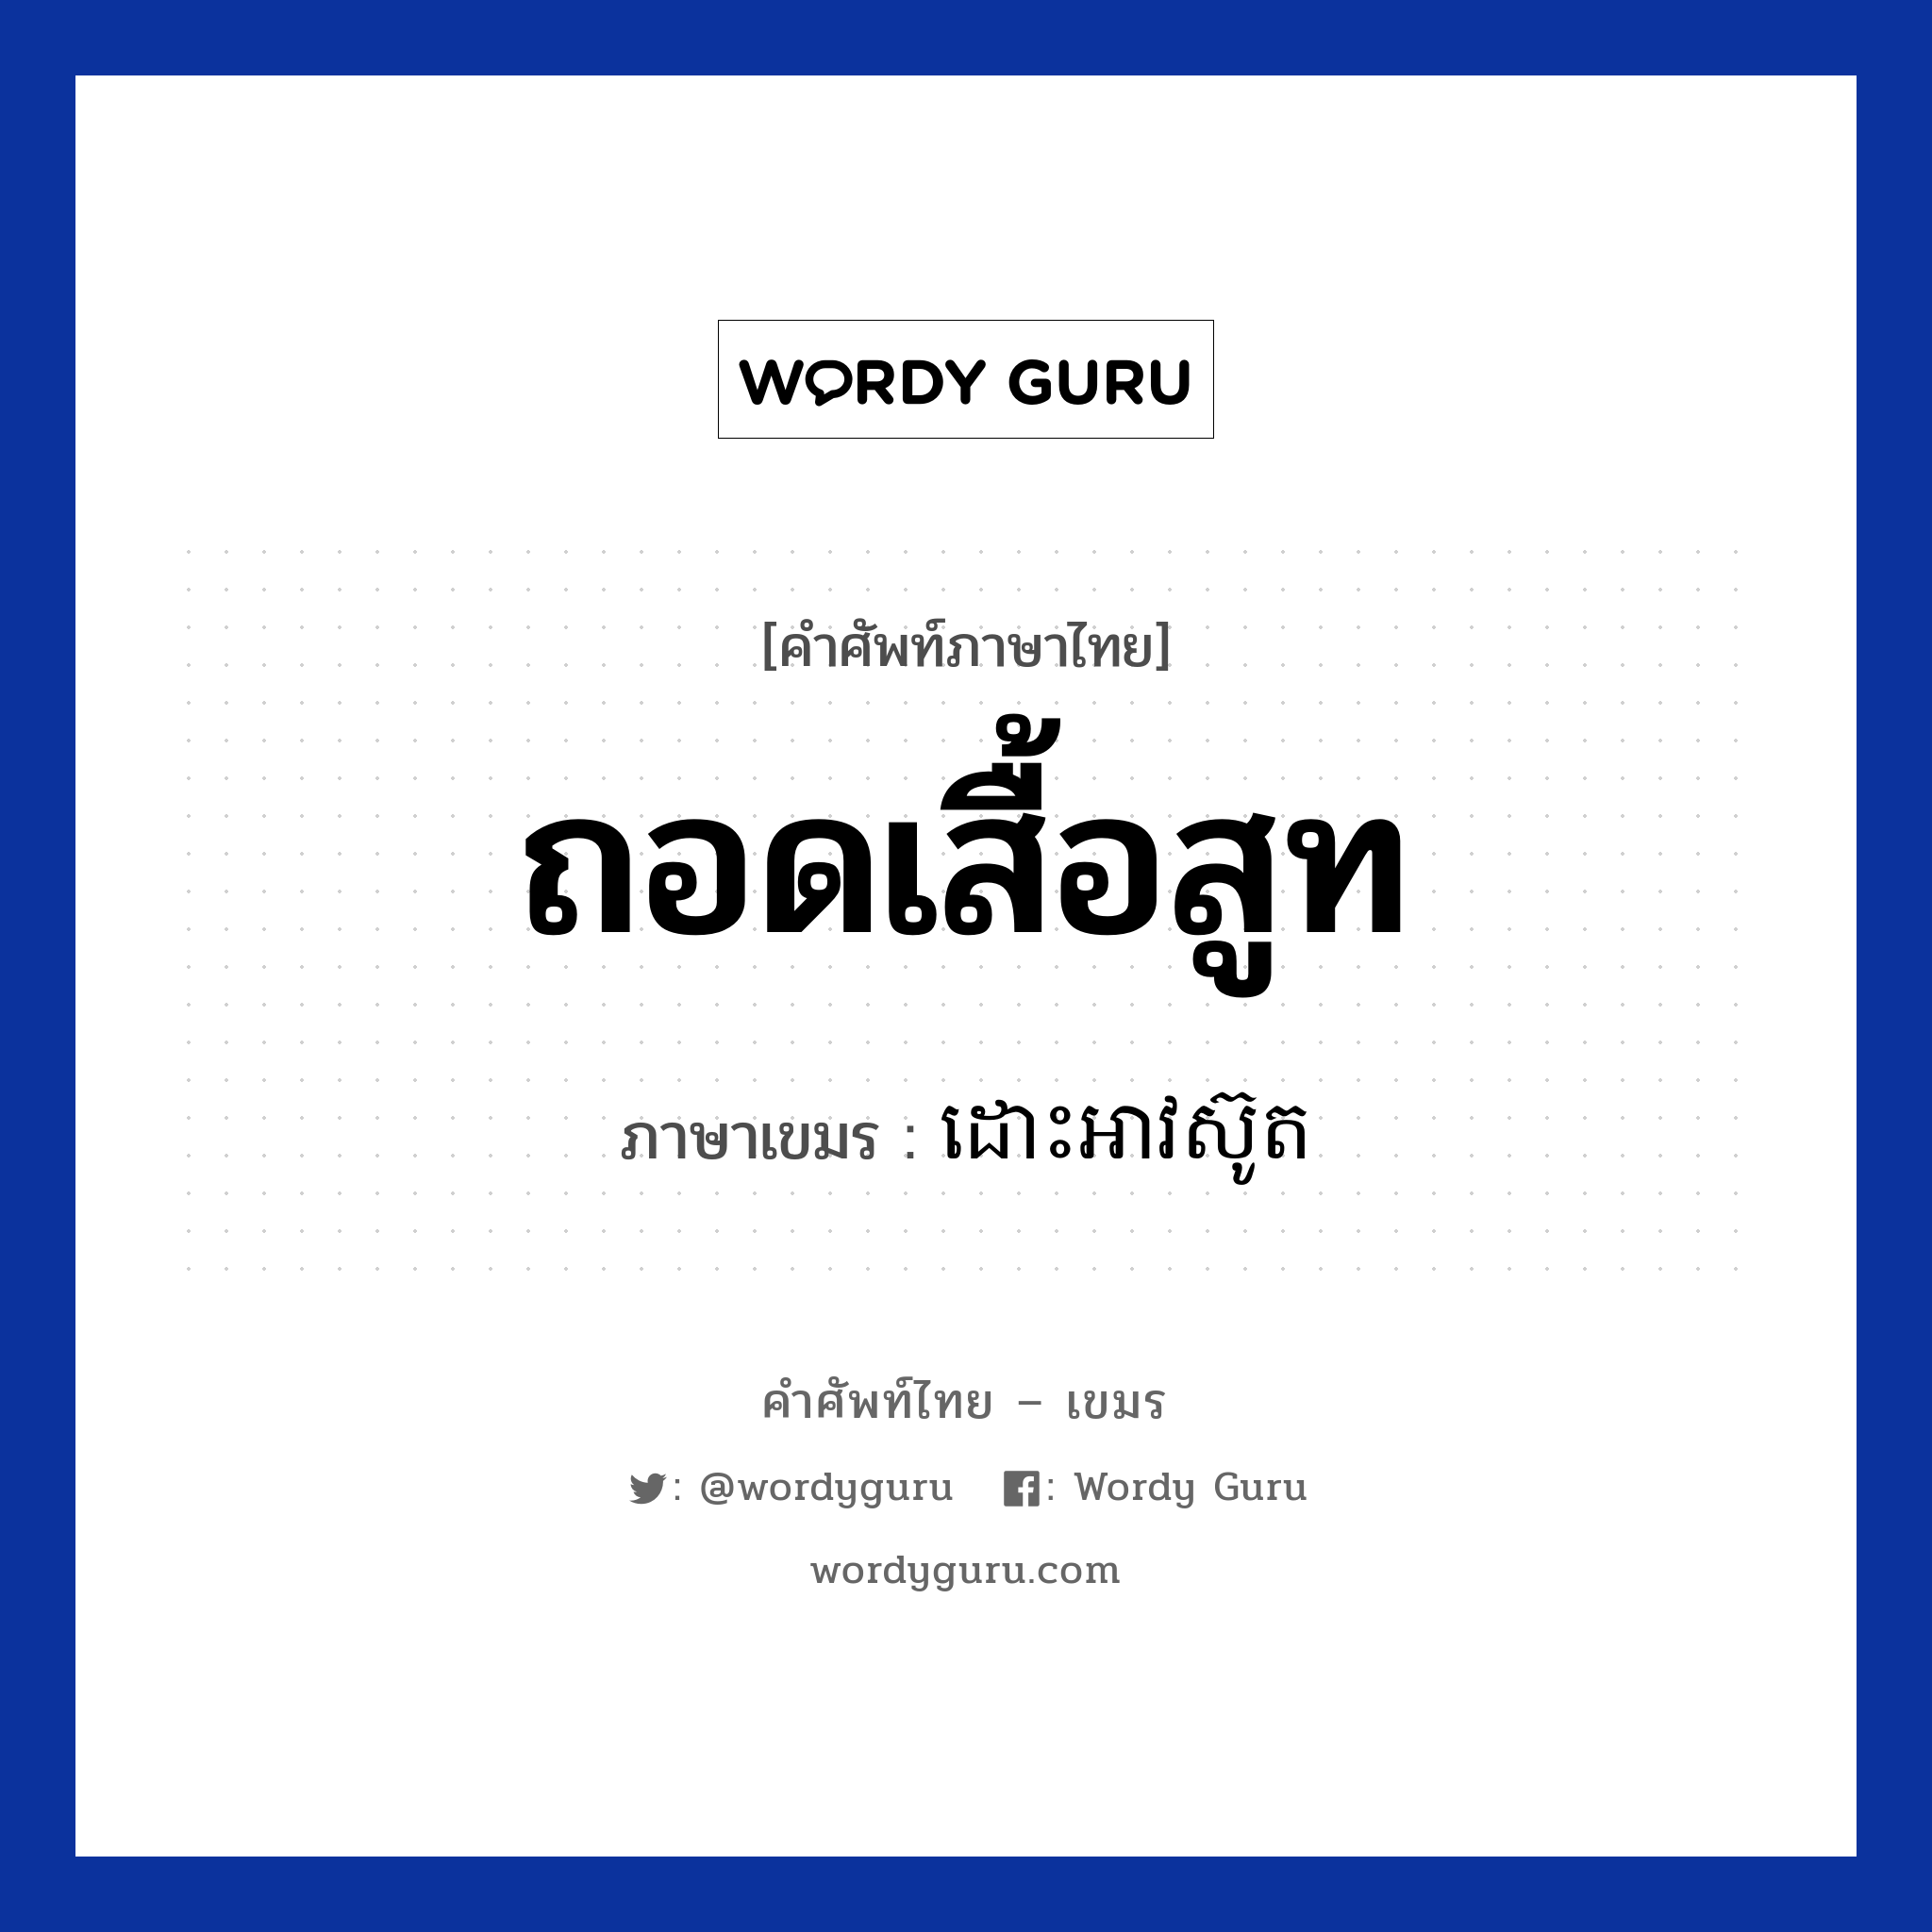 ถอดเสื้อสูท ภาษาเขมรคืออะไร, คำศัพท์ภาษาไทย - เขมร ถอดเสื้อสูท ภาษาเขมร ដោះអាវស៊ូត หมวด ของใช้ส่วนตัว Dors av suth หมวด ของใช้ส่วนตัว